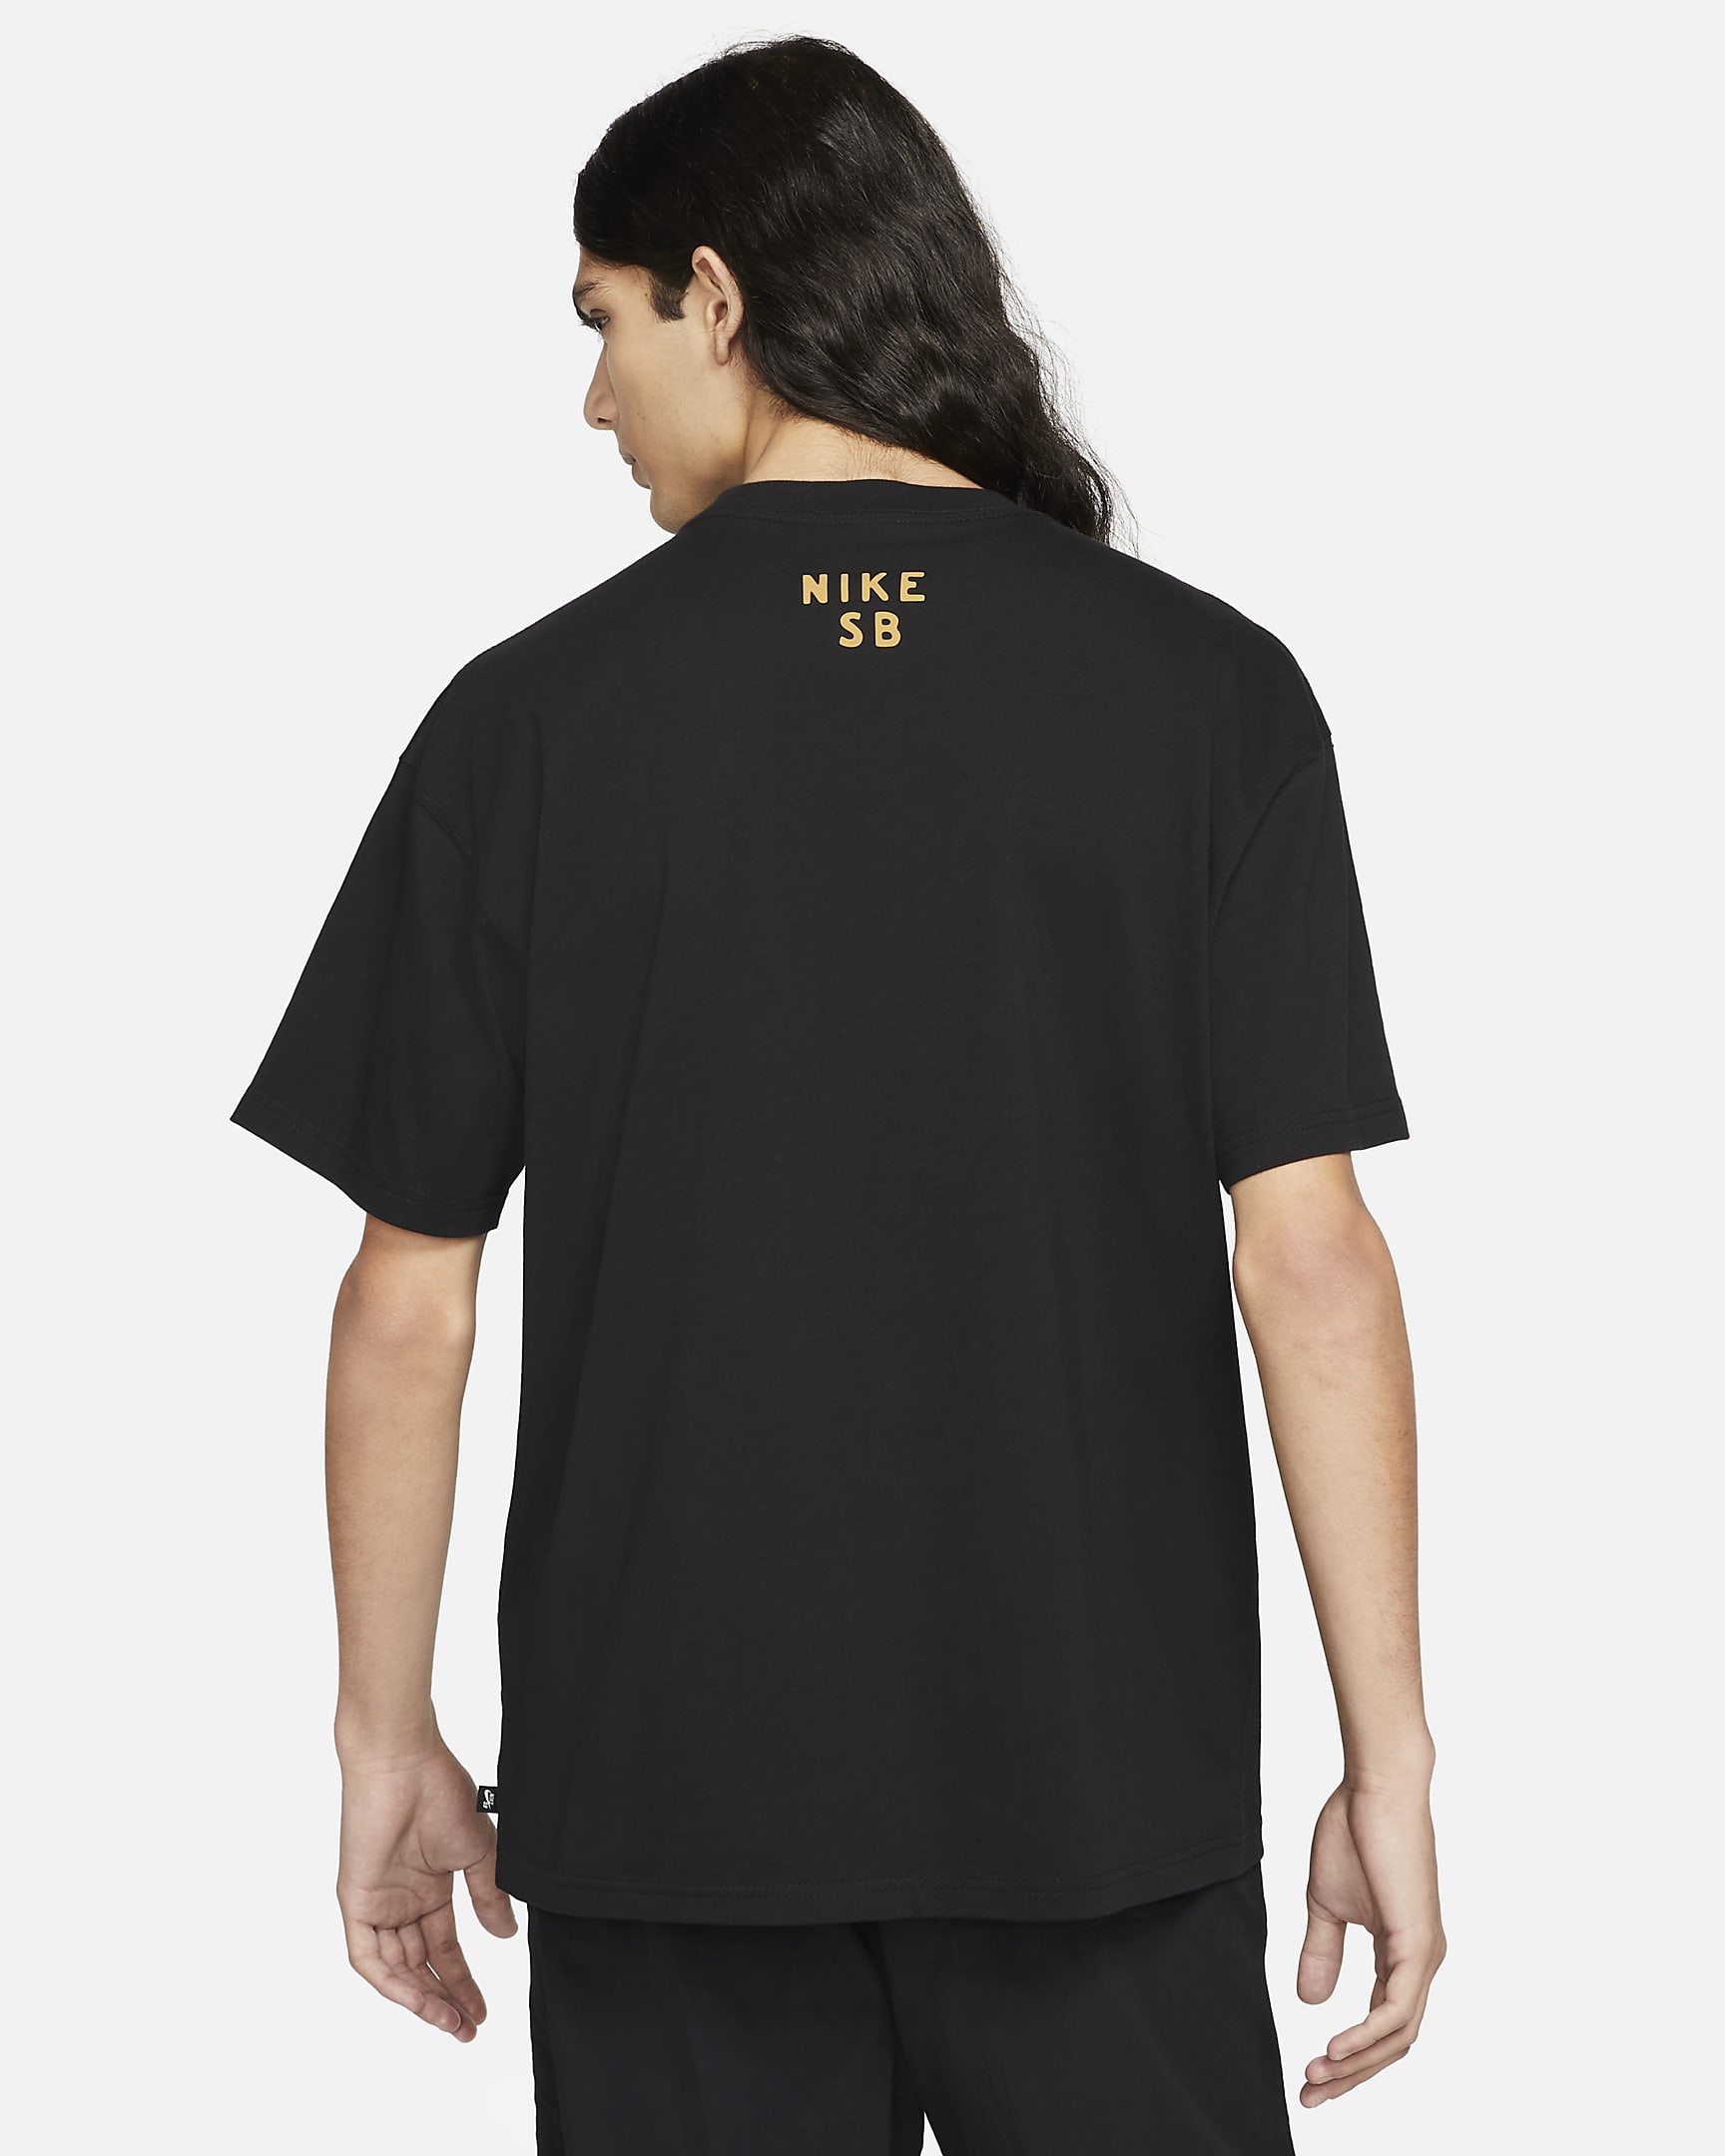 Nike SB Men's Graphic Skate T-Shirt. Nike.com